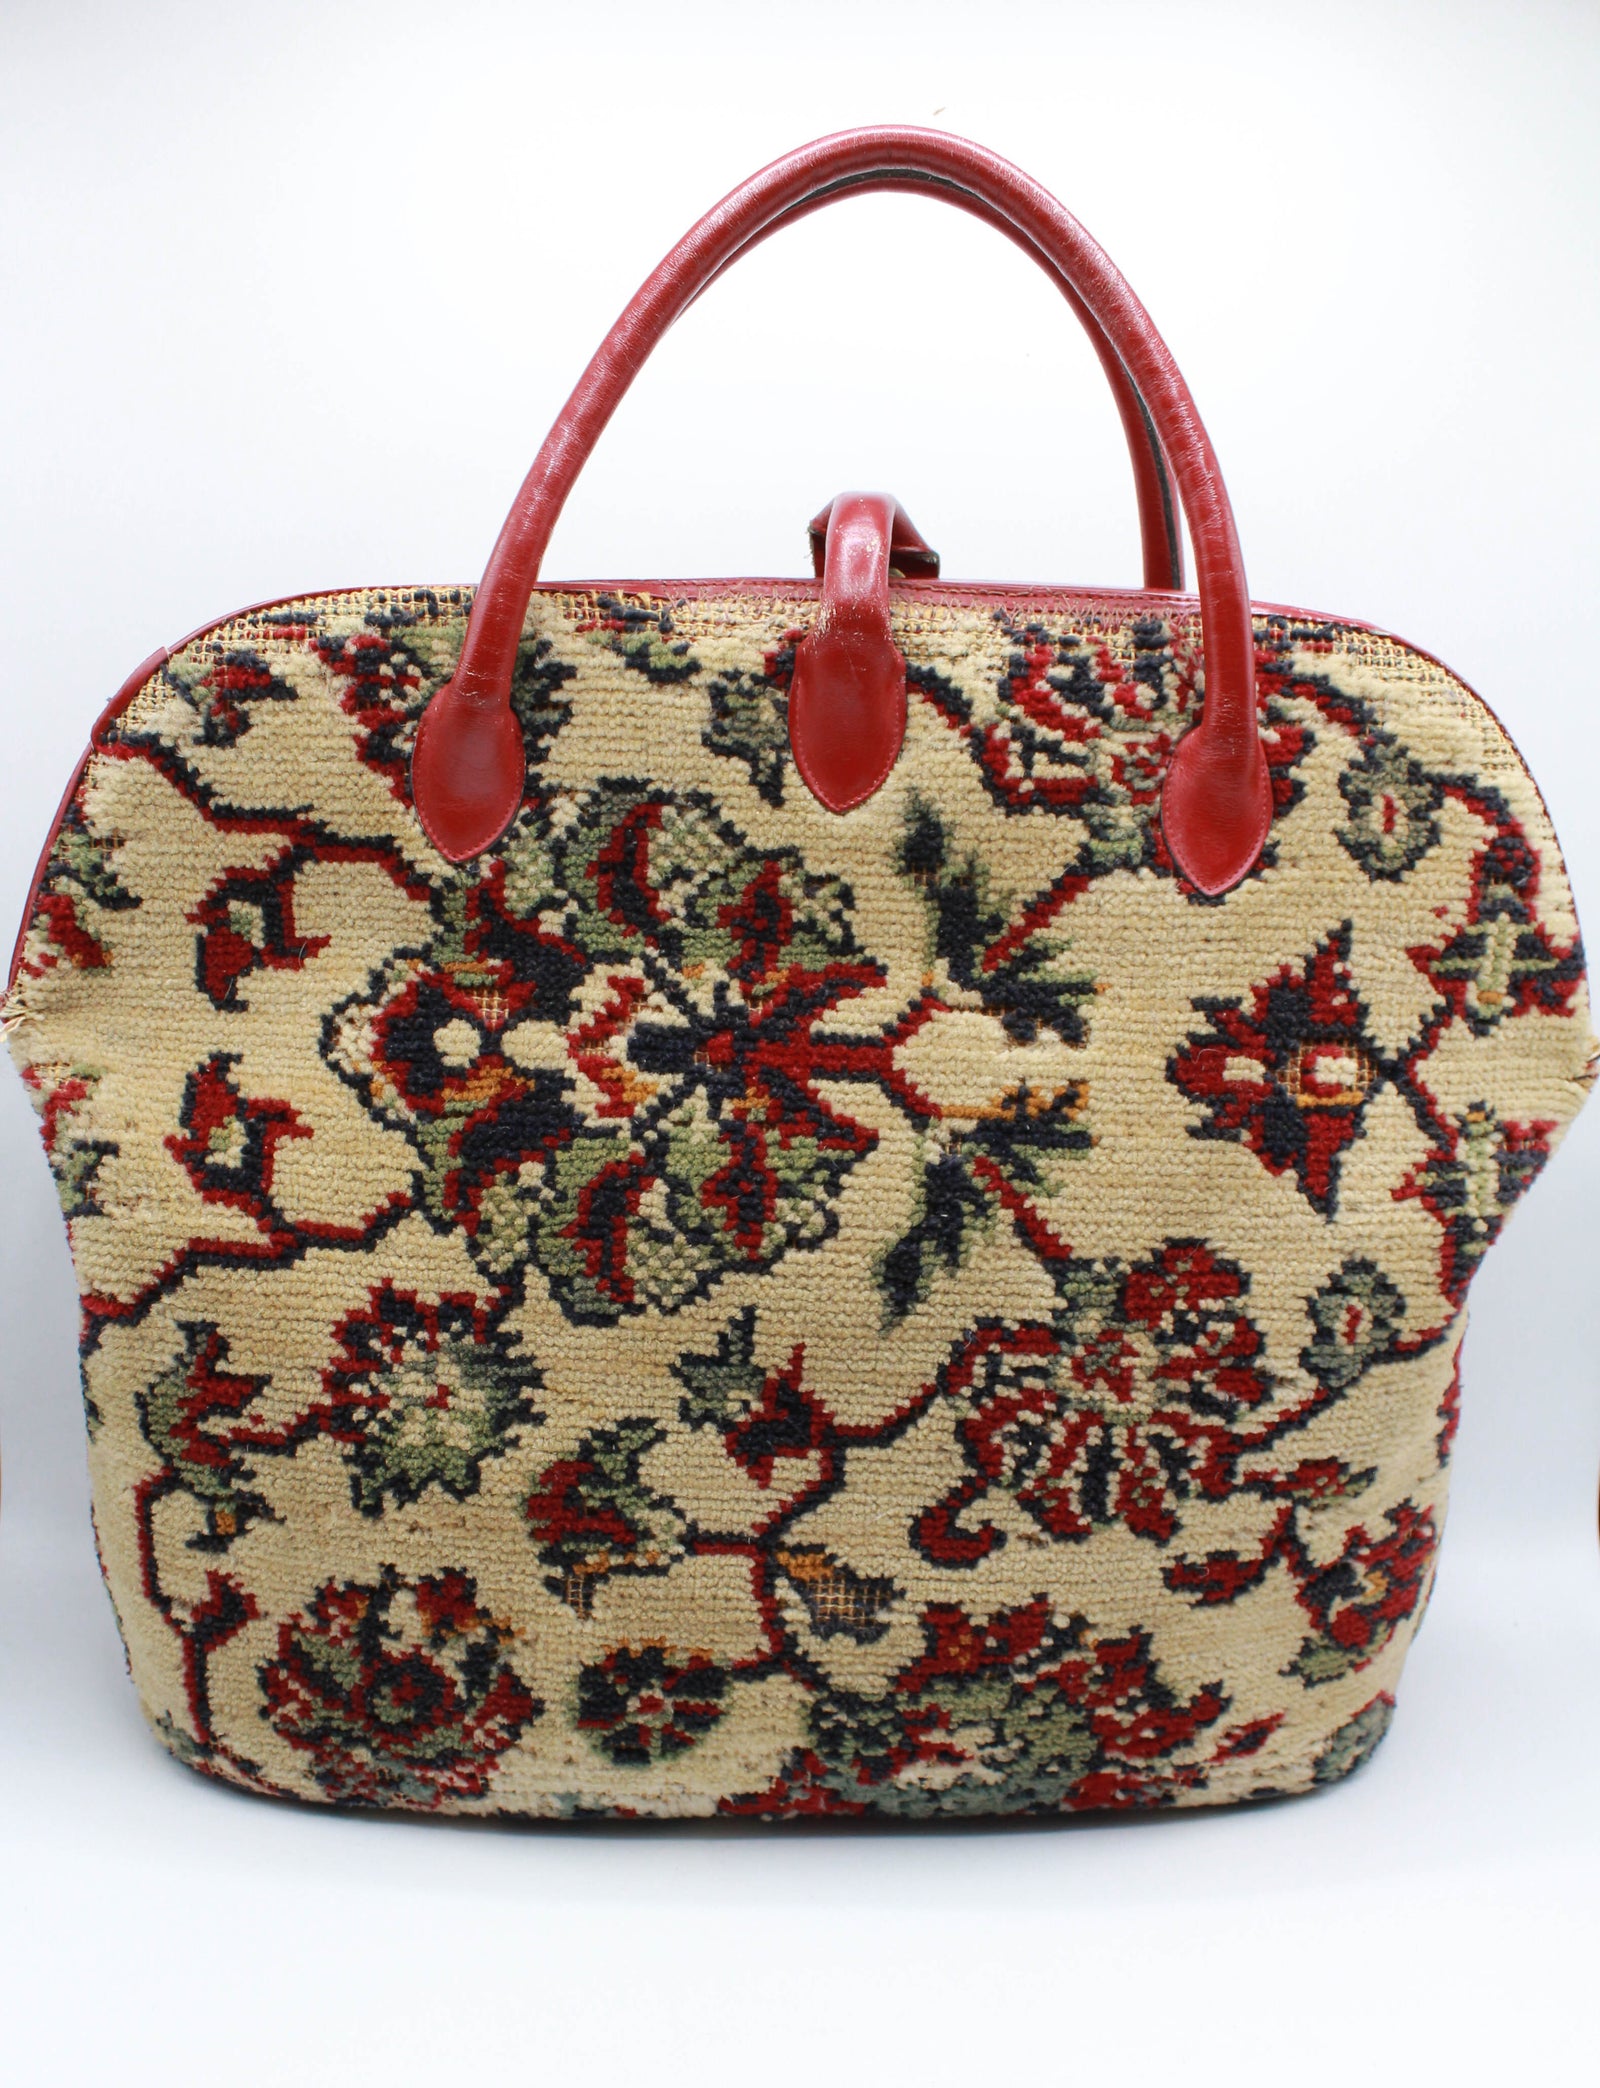 Vintage 60's Floral Carpet Bag Purse Red Leather Trim – Black Shag Vintage